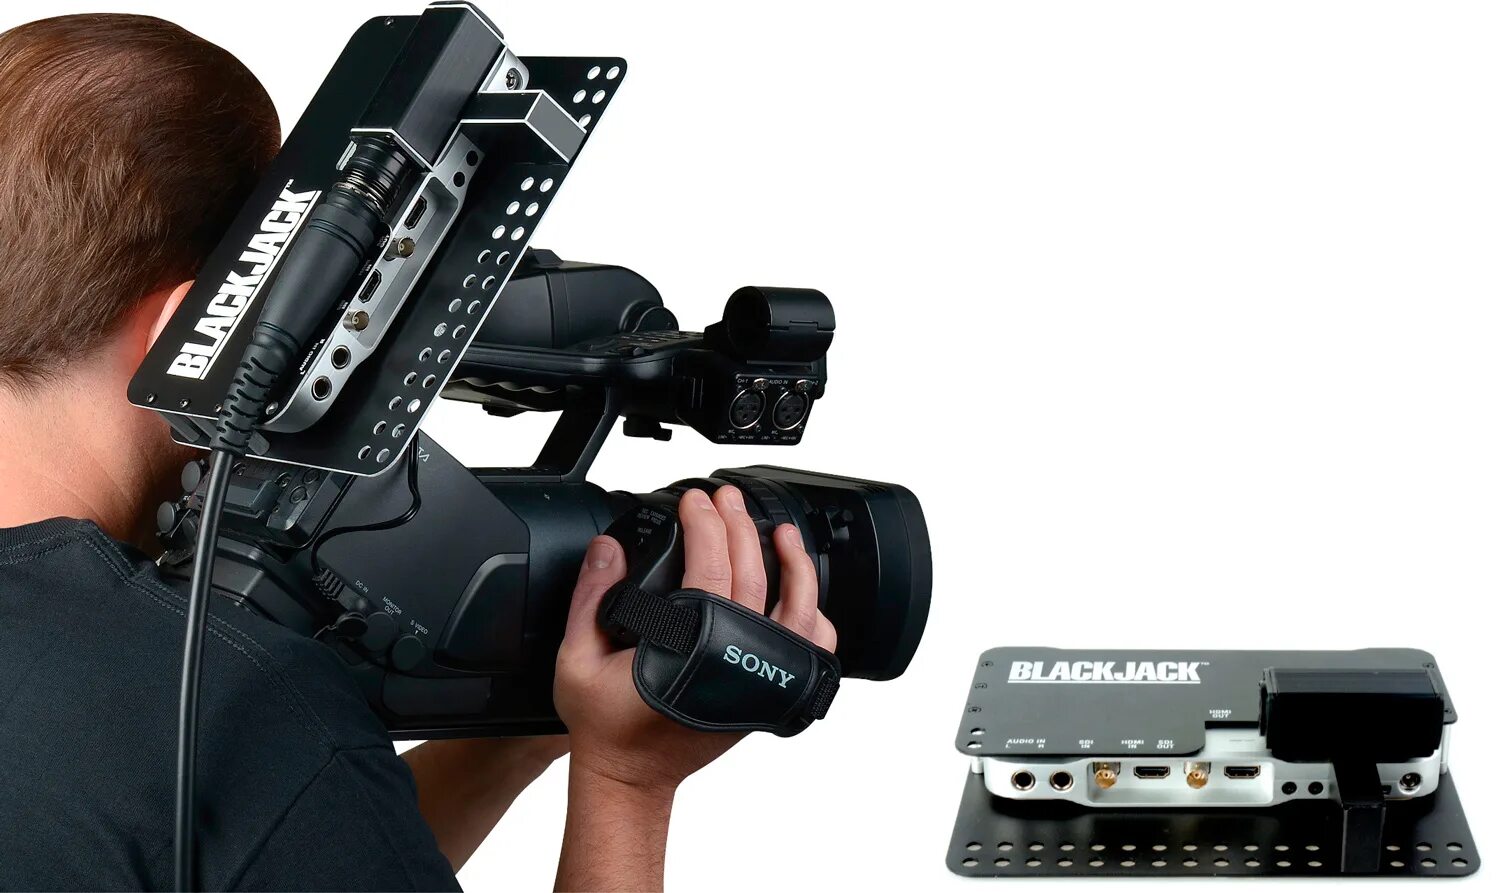 Blackmagic support. Blackmagic Camera Converter. Atem Camera Converter. Blackmagic для спины. Идфсльфпшс сфьукфсщтмукеук вс.